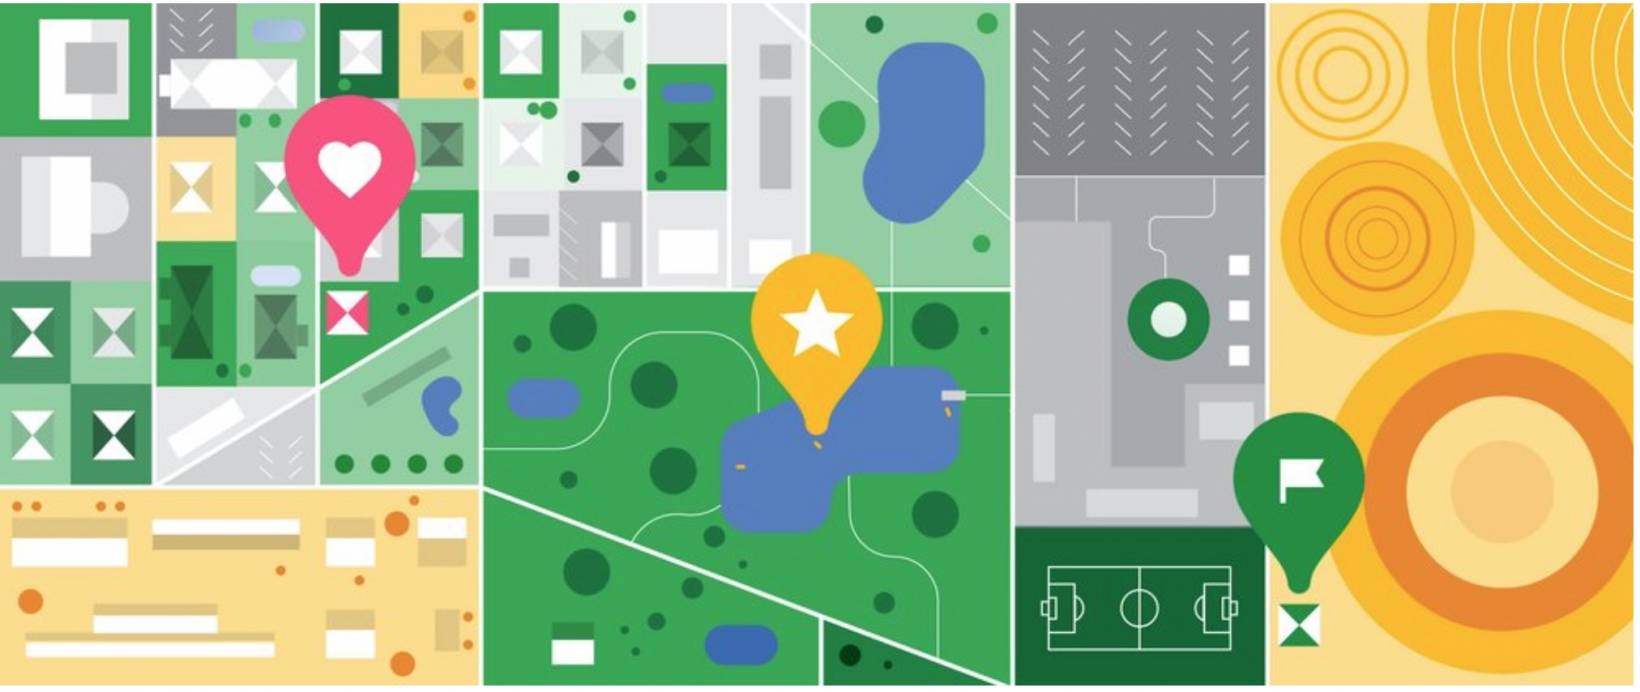 تحديث خرائط جوجل يجعل علامة التبويب المحفوظة أكثر فائدة